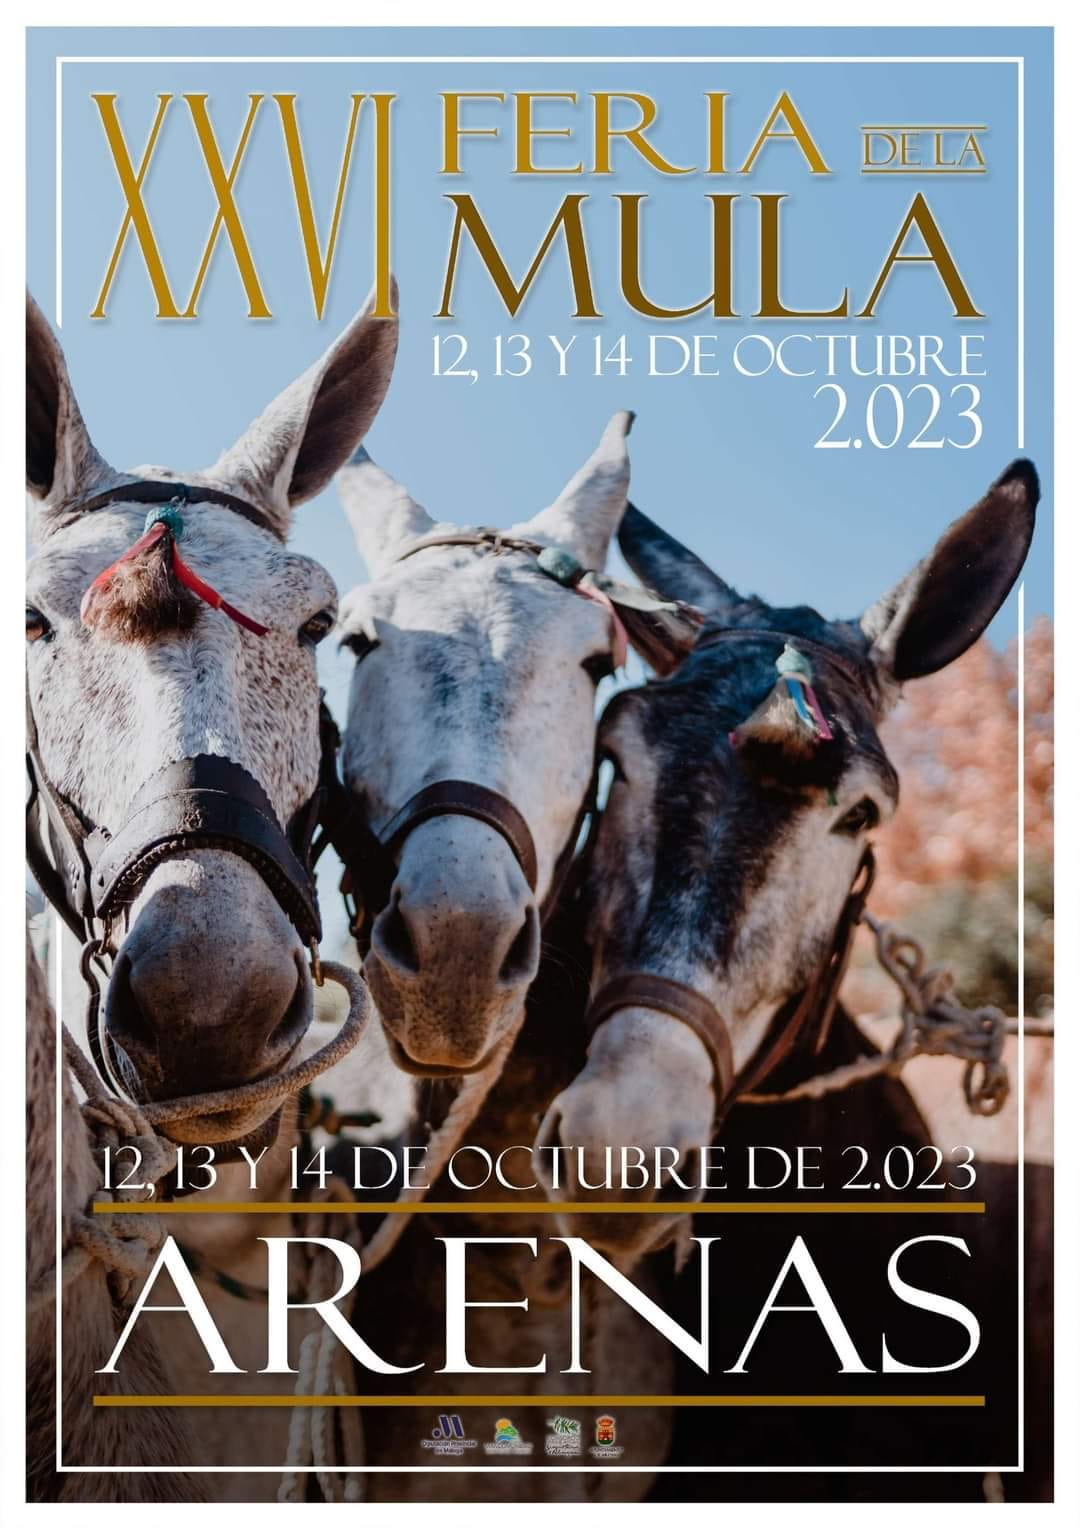 Mule Festival 2023 in Arenas - Andaluciamia